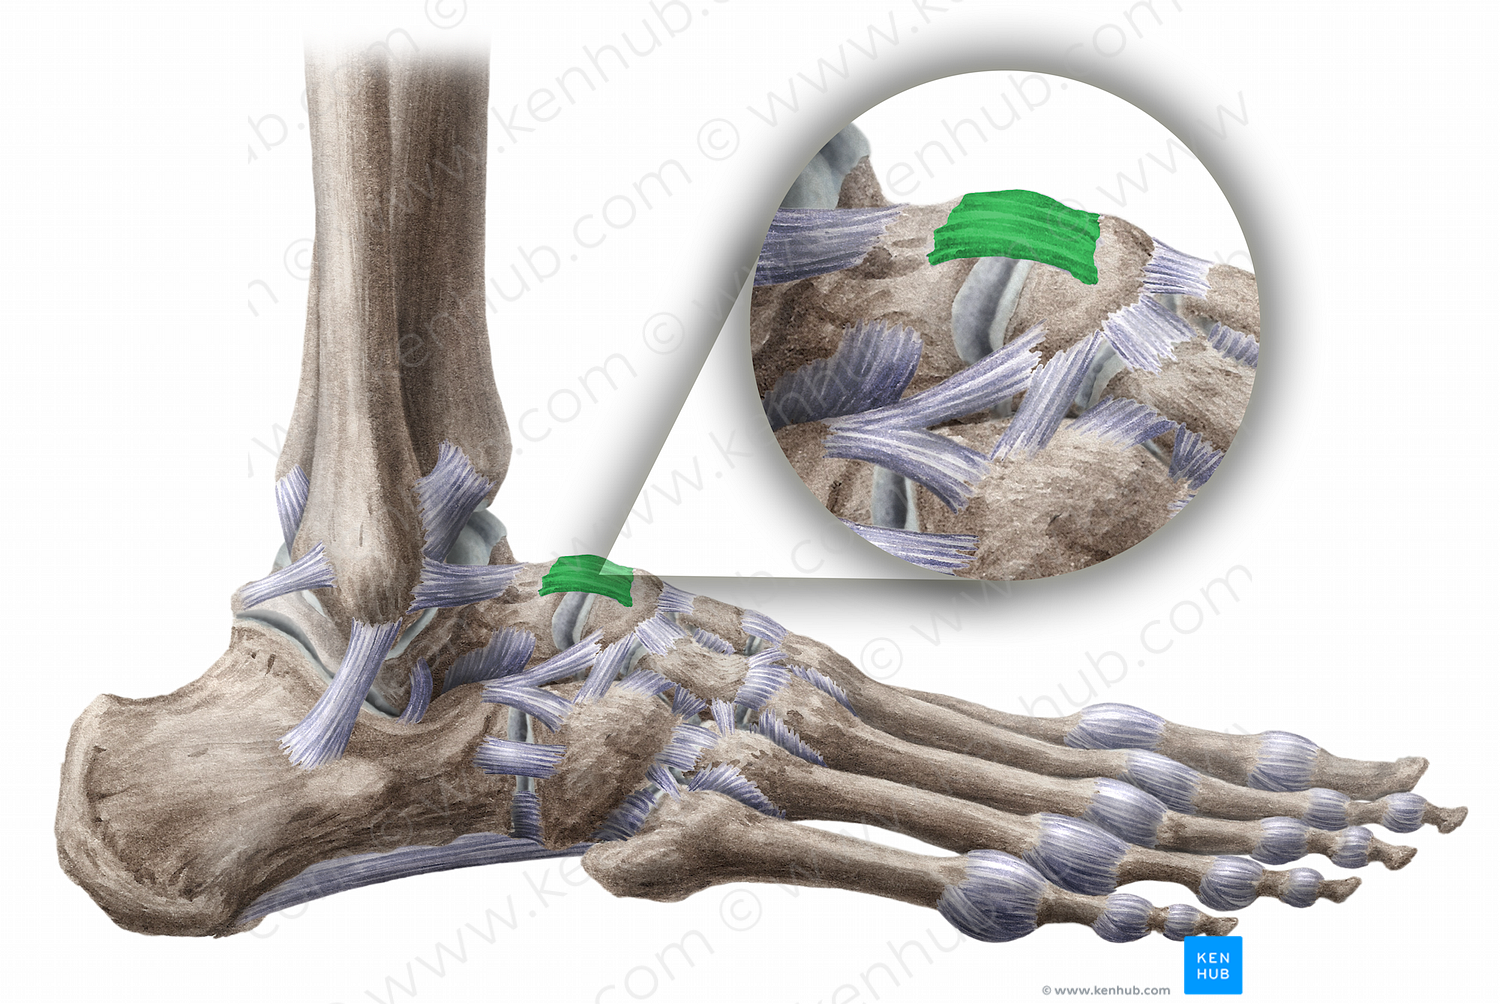 Talonavicular ligament (#11467)